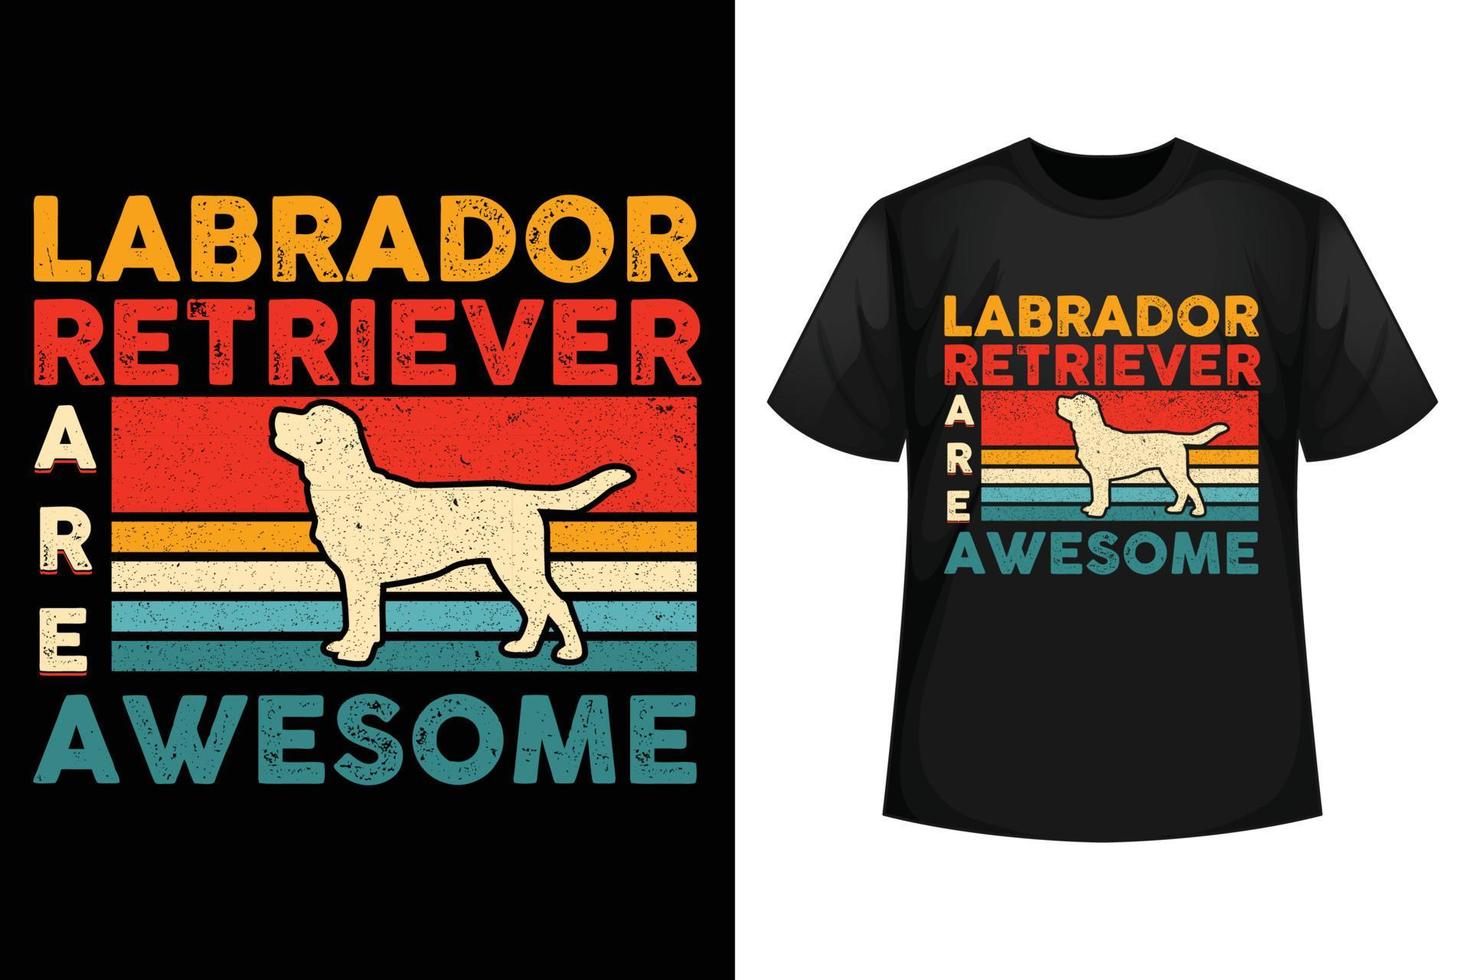 Labrador Retriever are awesome - Dog t-shirt design template vector